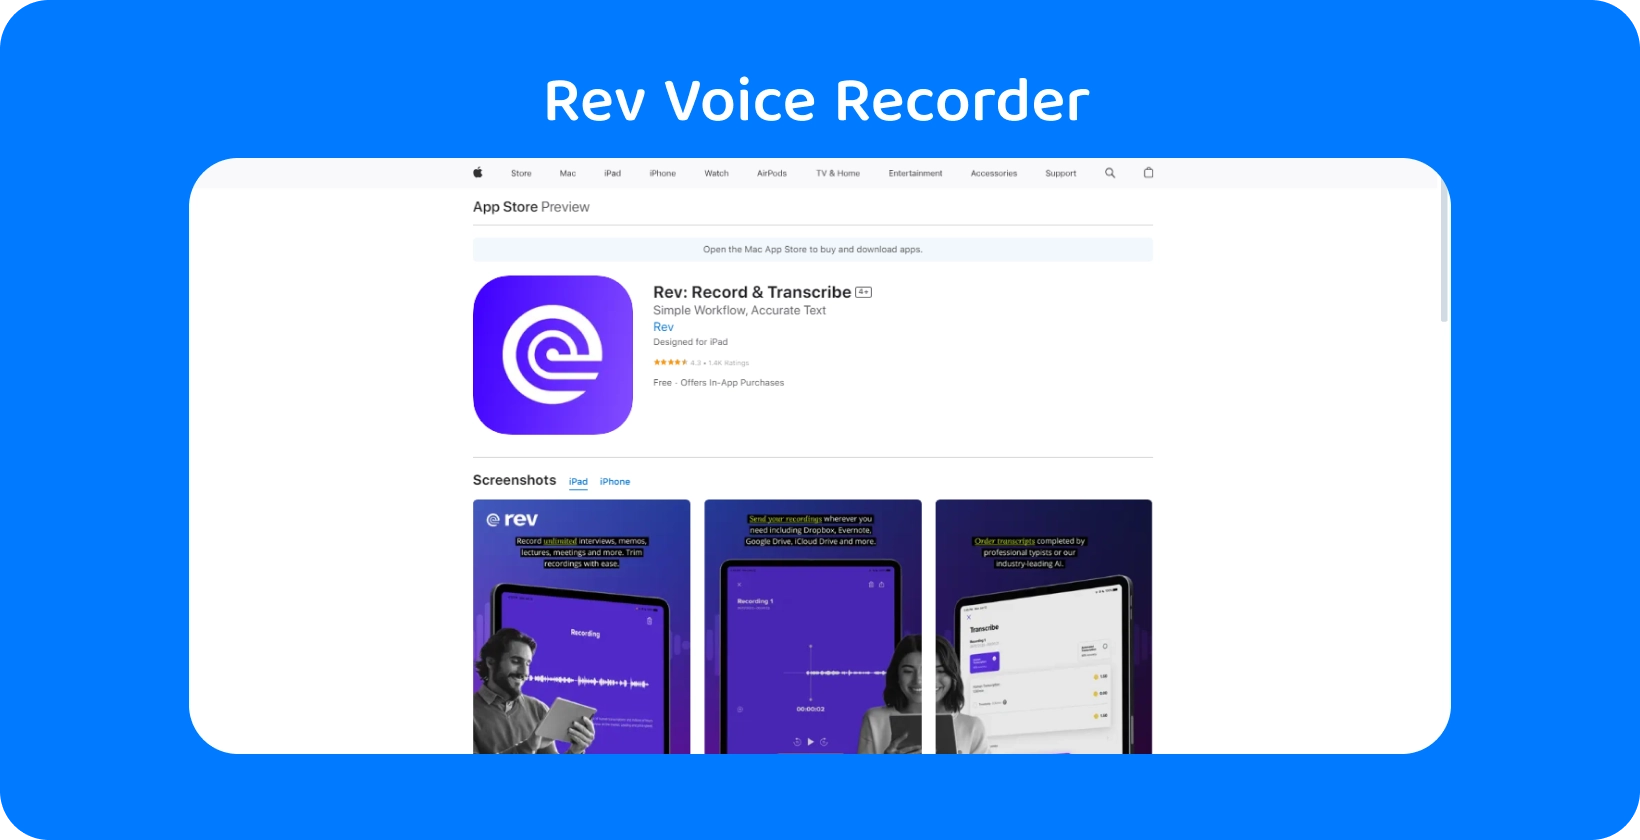 Приложение Rev Voice Recorder в Apple App Store, подчеркивающее его элегантный дизайн и функции транскрипции.